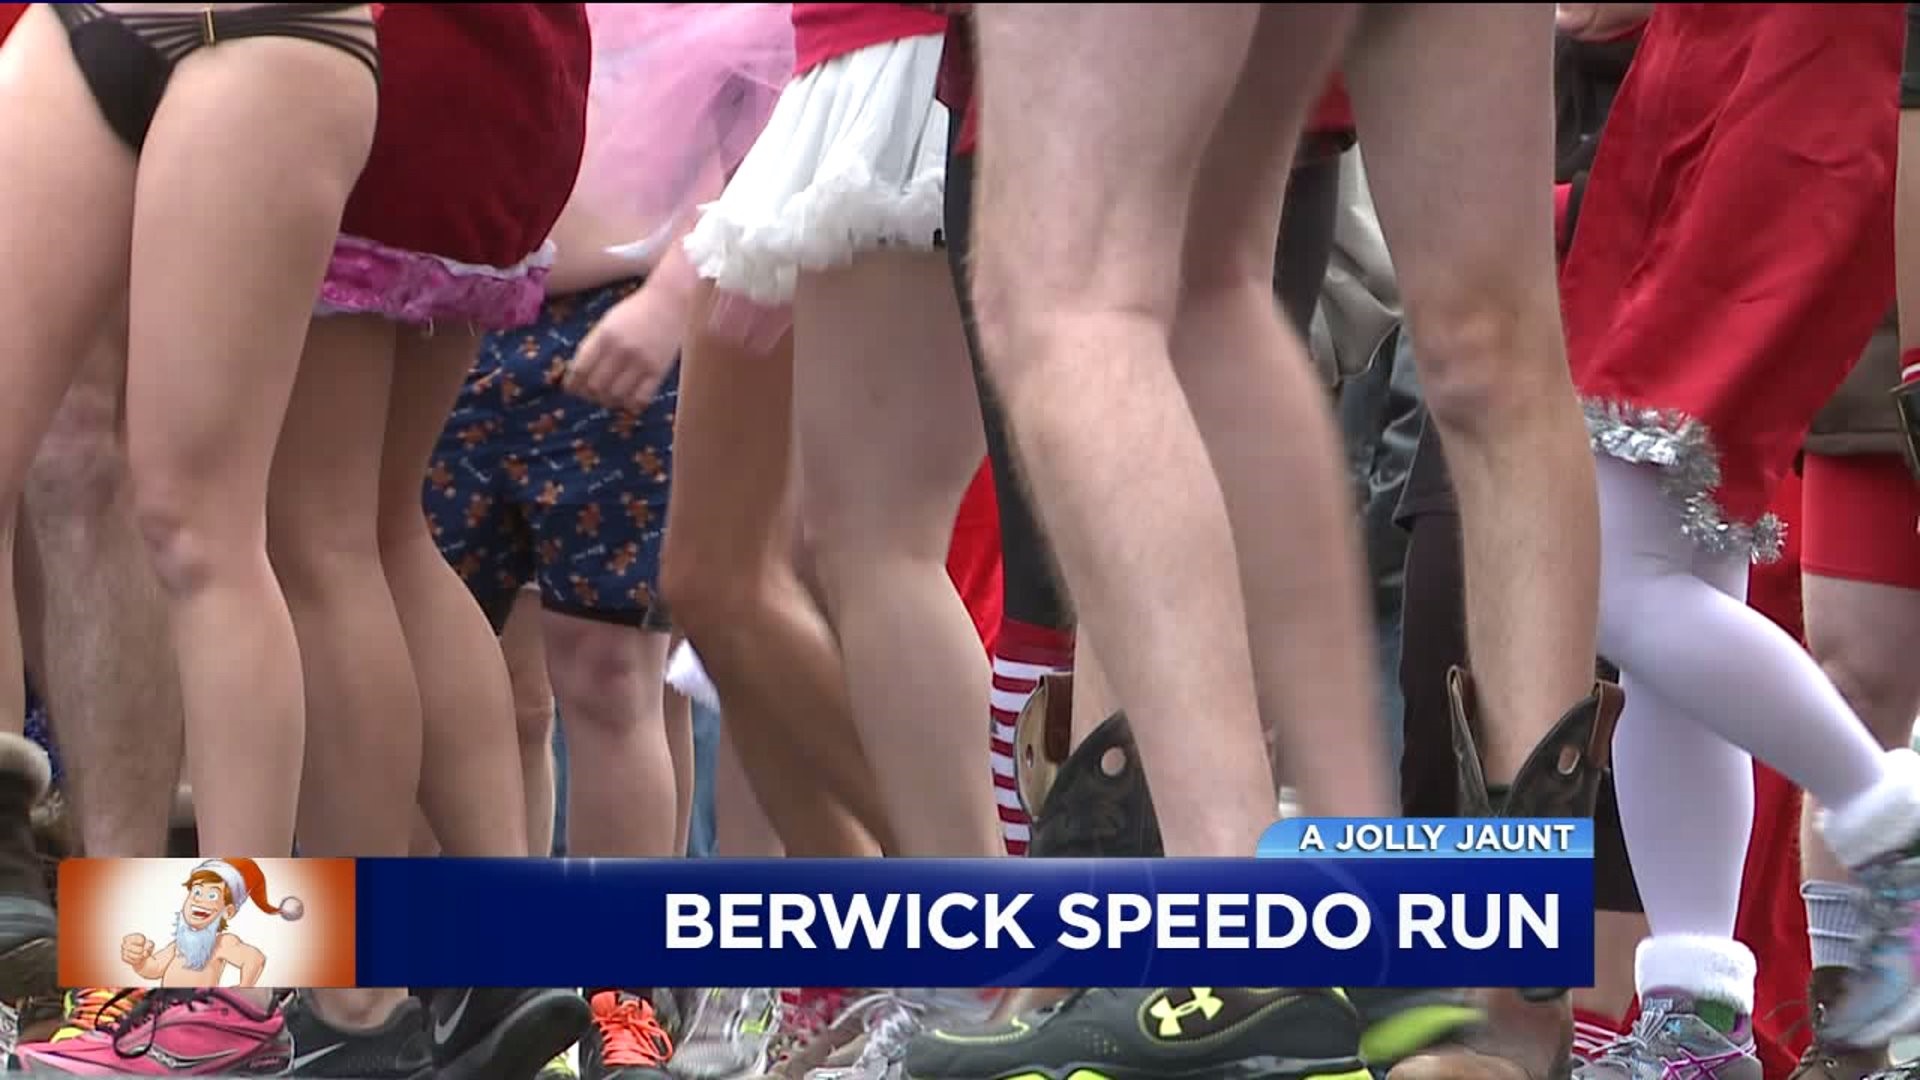 Speedo Run Coming to Berwick